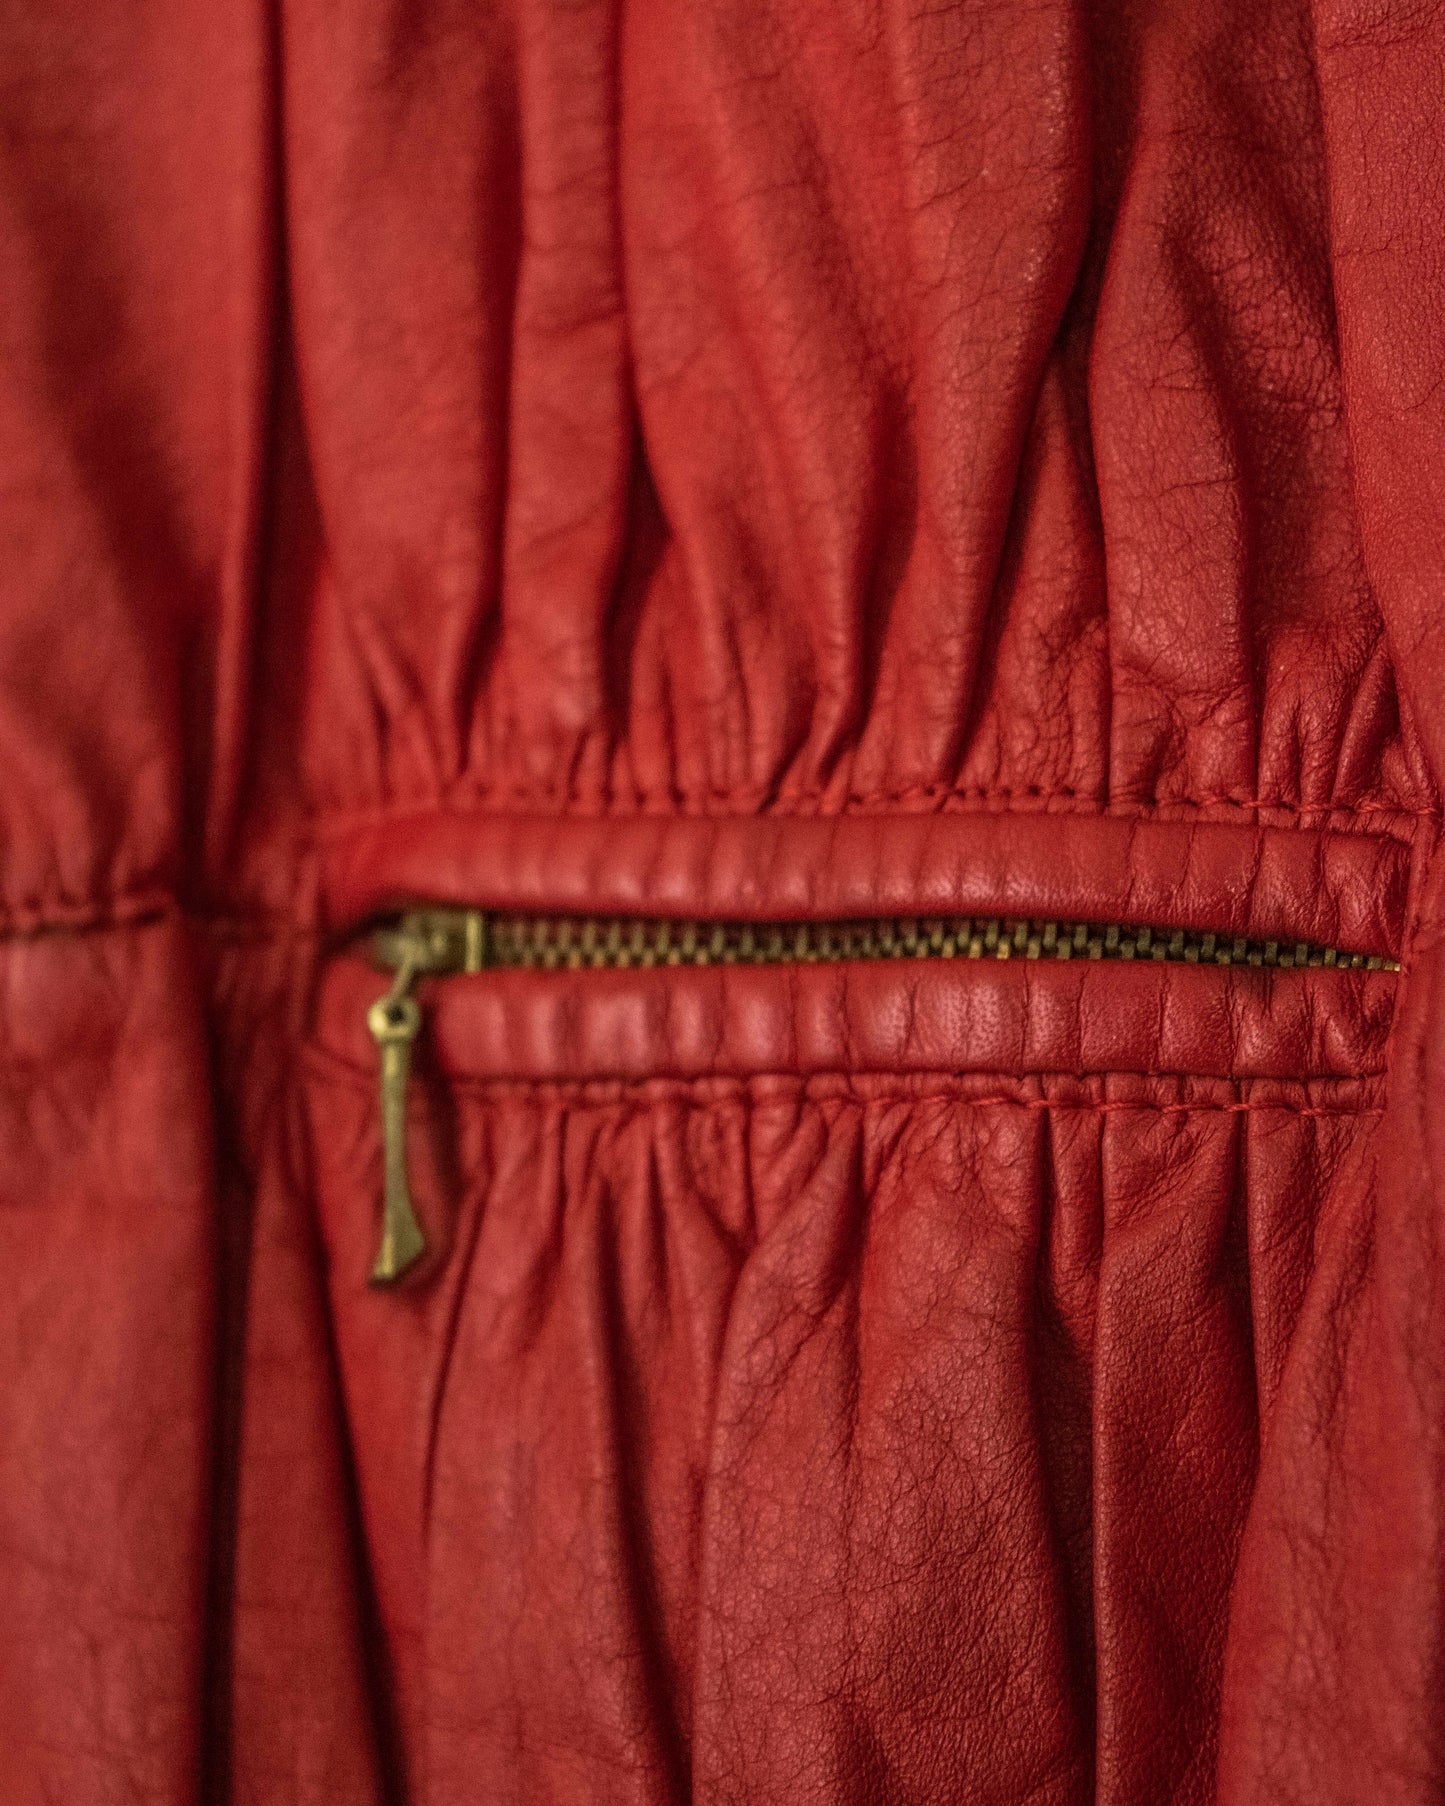 粗犷的红色皮夹克